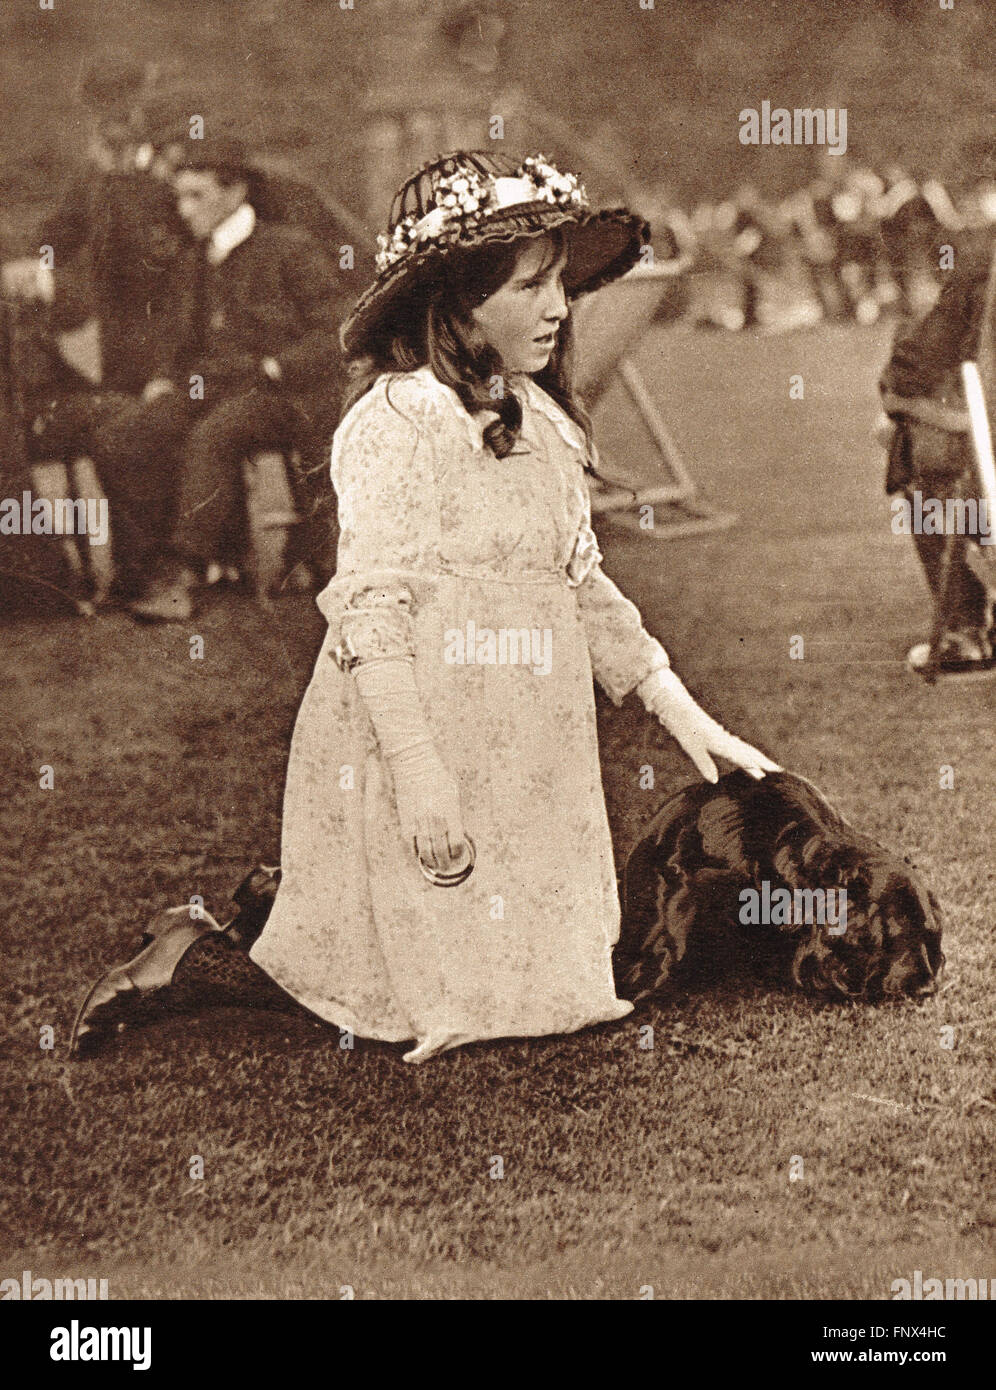 Elizabeth Bowes-Lyon The Queen Mother (1900-2002) als junges Mädchen in  Glamis Castle, Schottland im Jahr 1907 Stockfotografie - Alamy